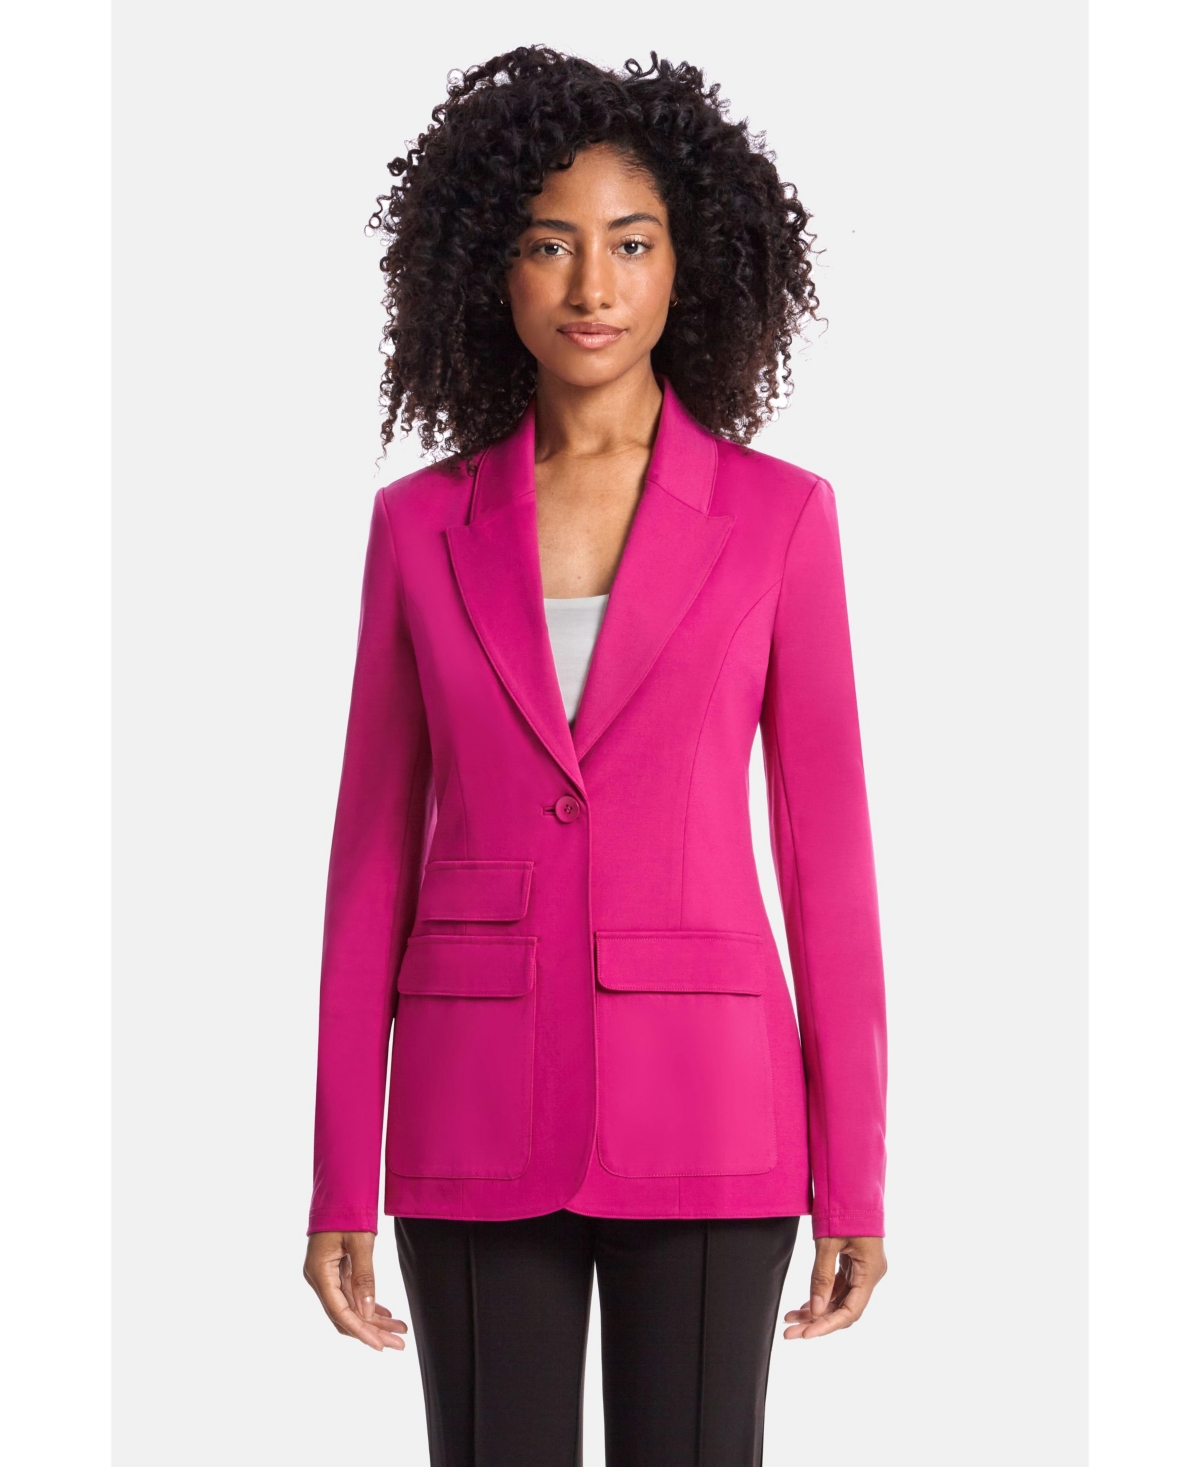 Women The Hailey Blazer in x57 - Pink